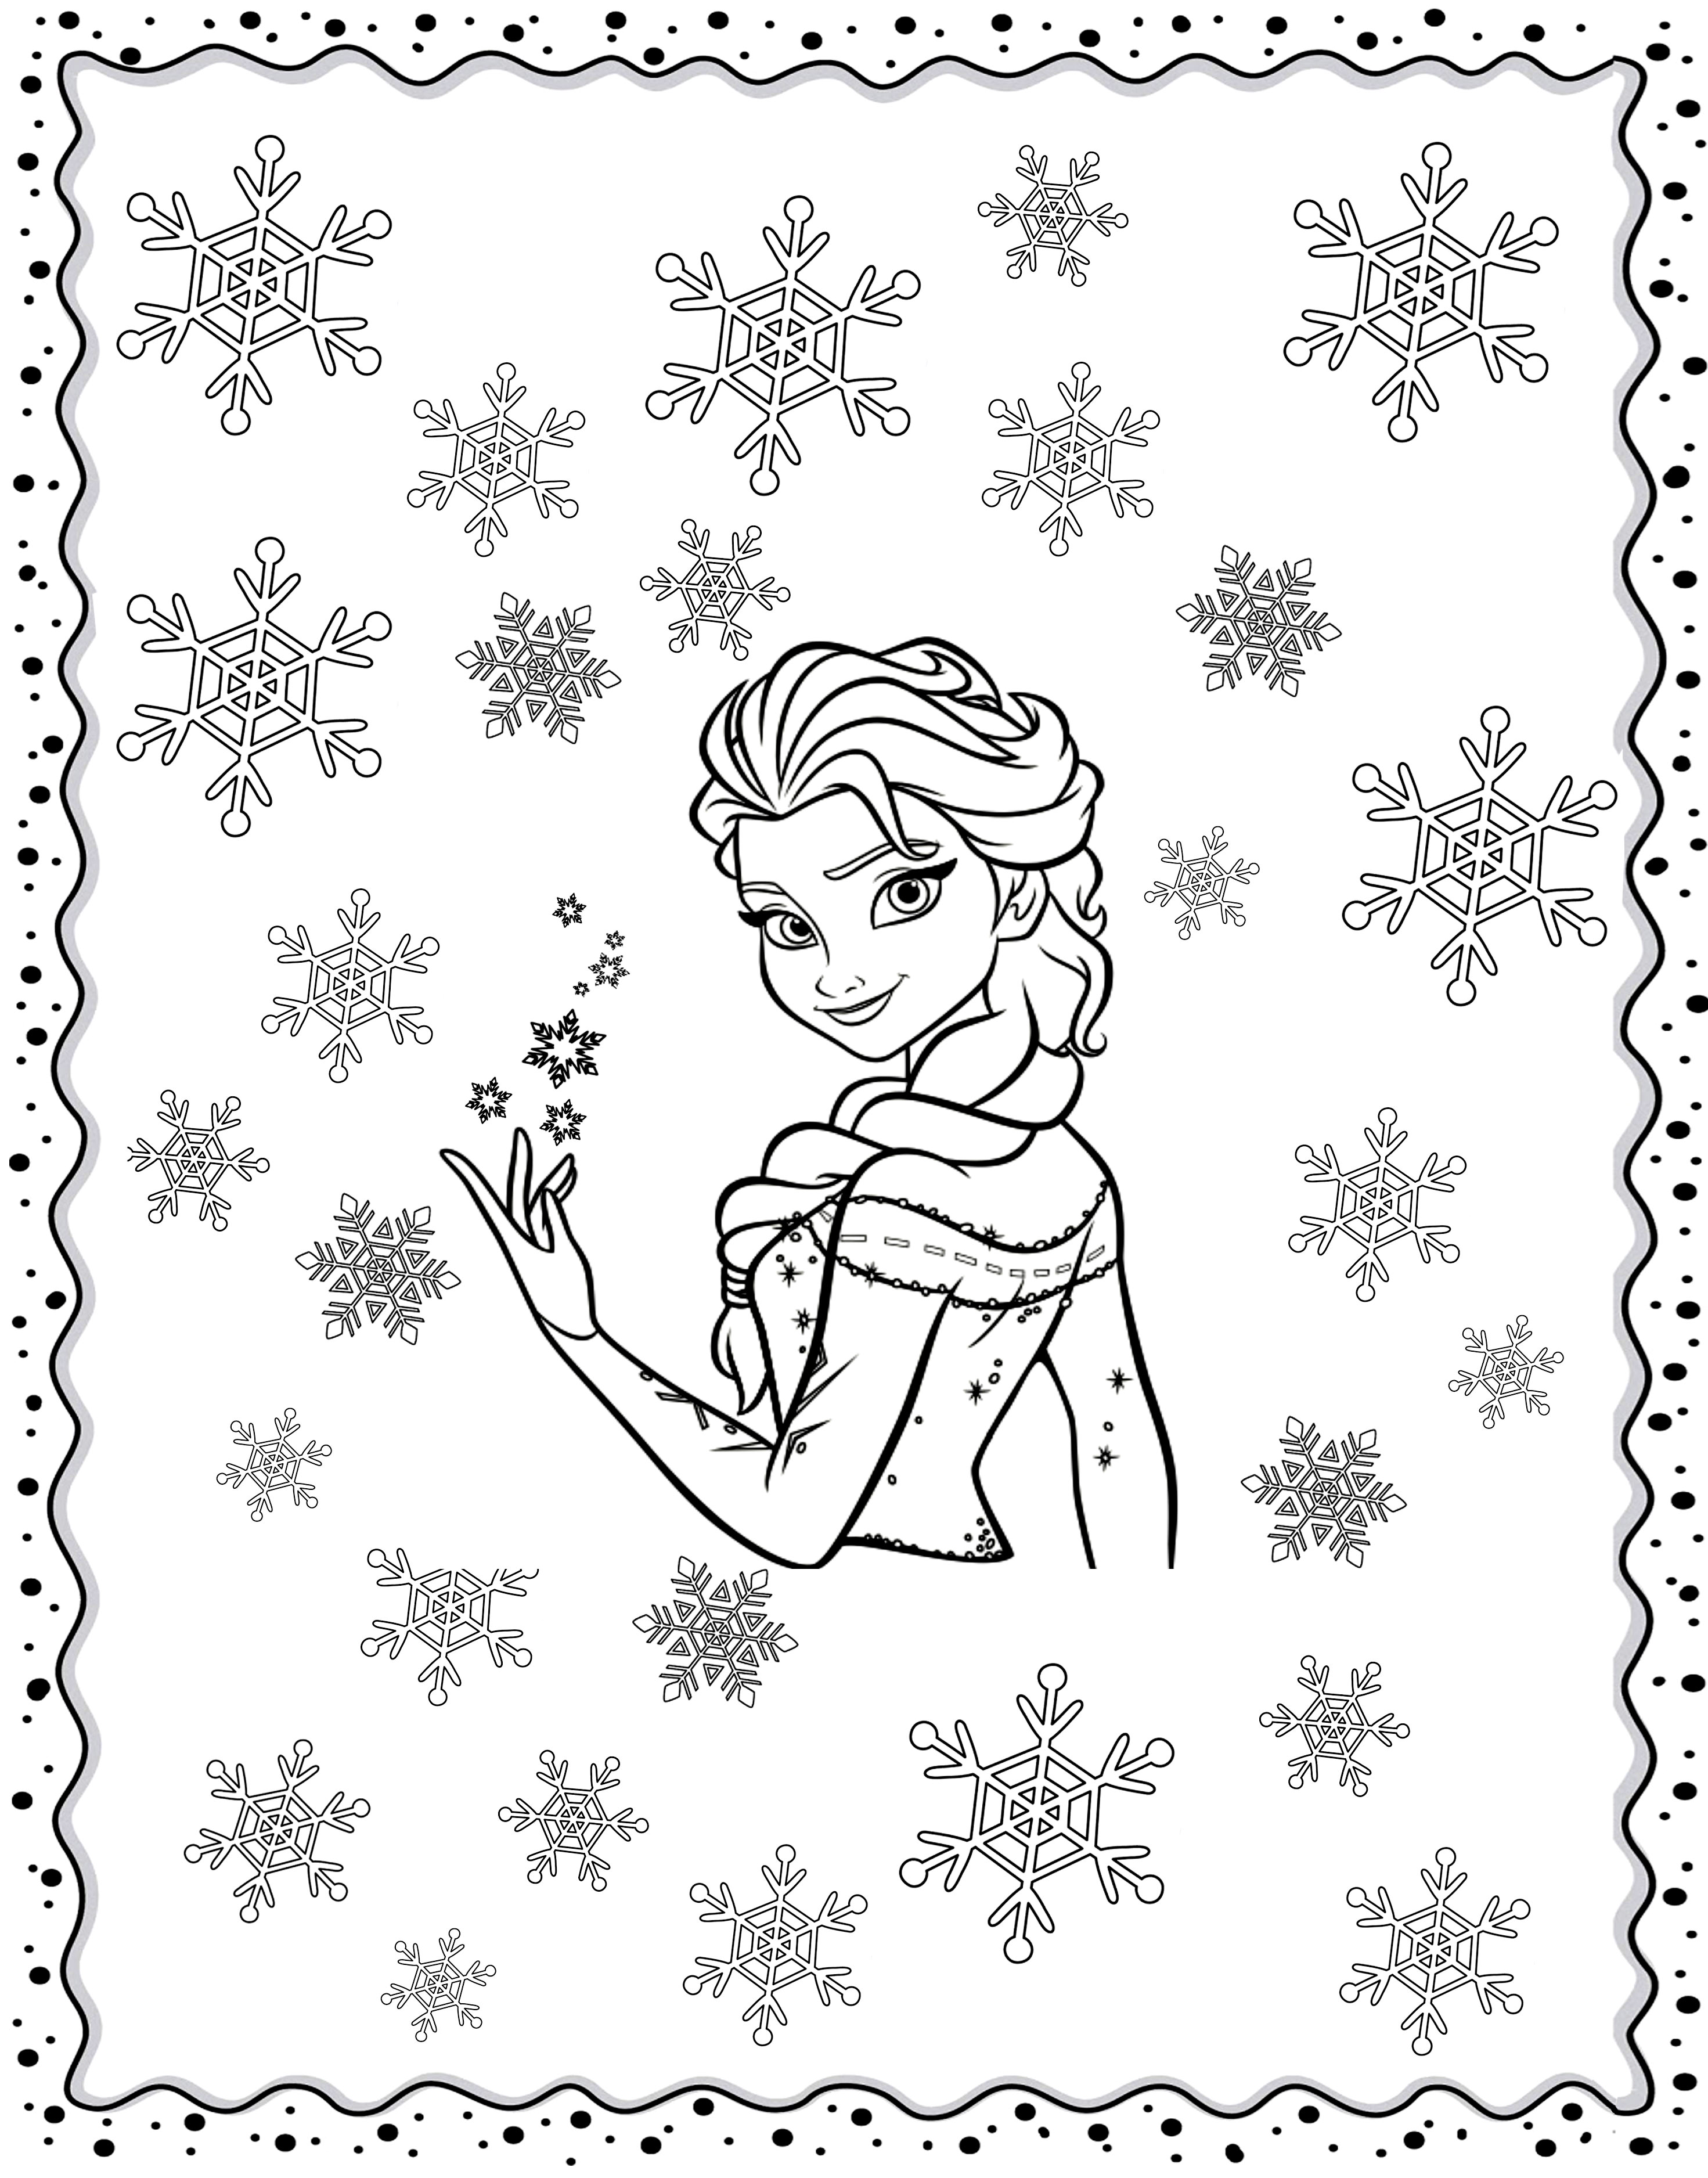 Un coloriage pour adulte inspiré de la Reine des neiges